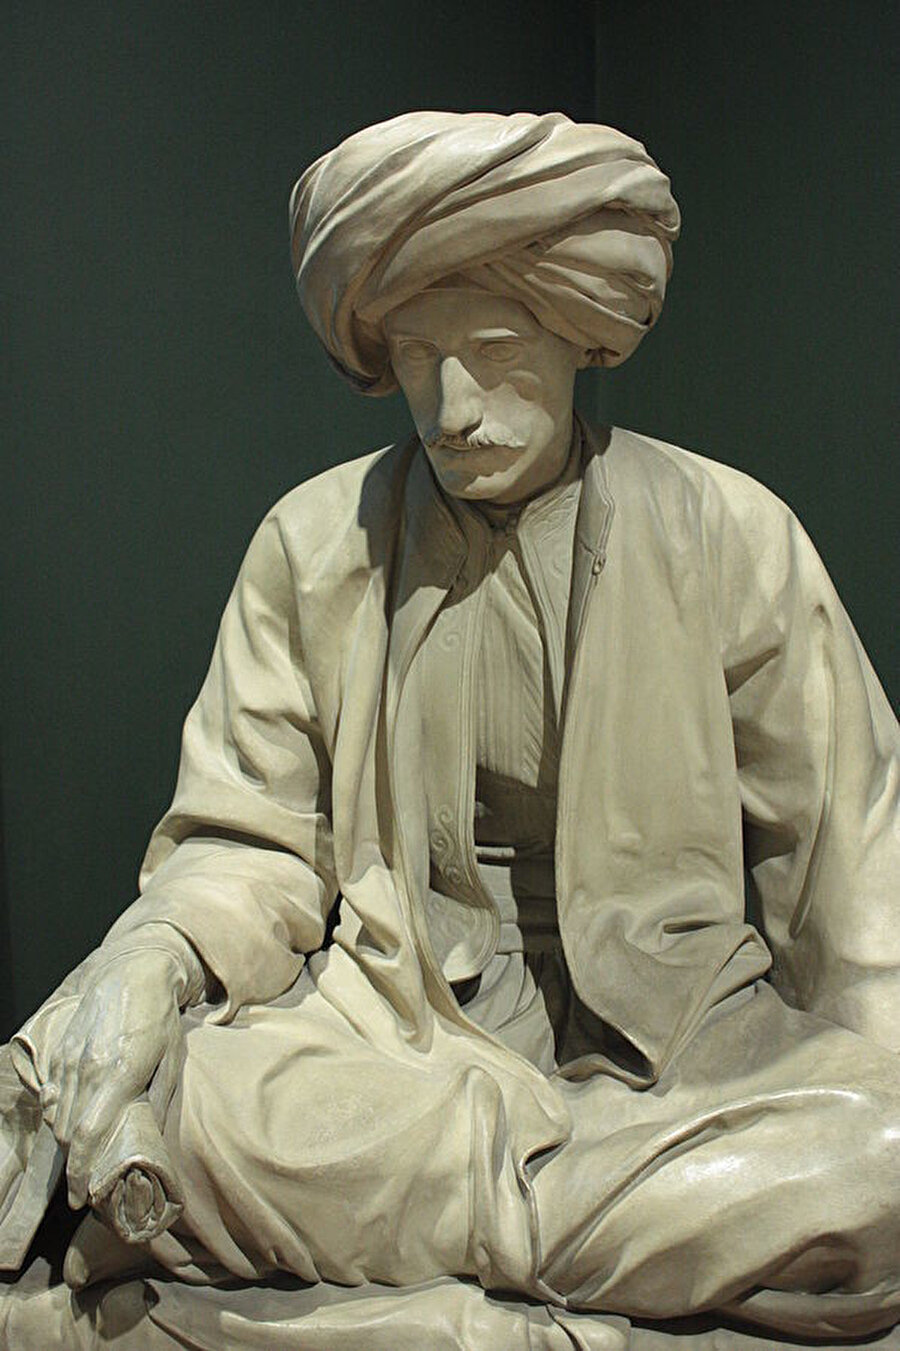 Osmanlı kıyafetleri içerisinde heykelleştirilen Edward William Lane.